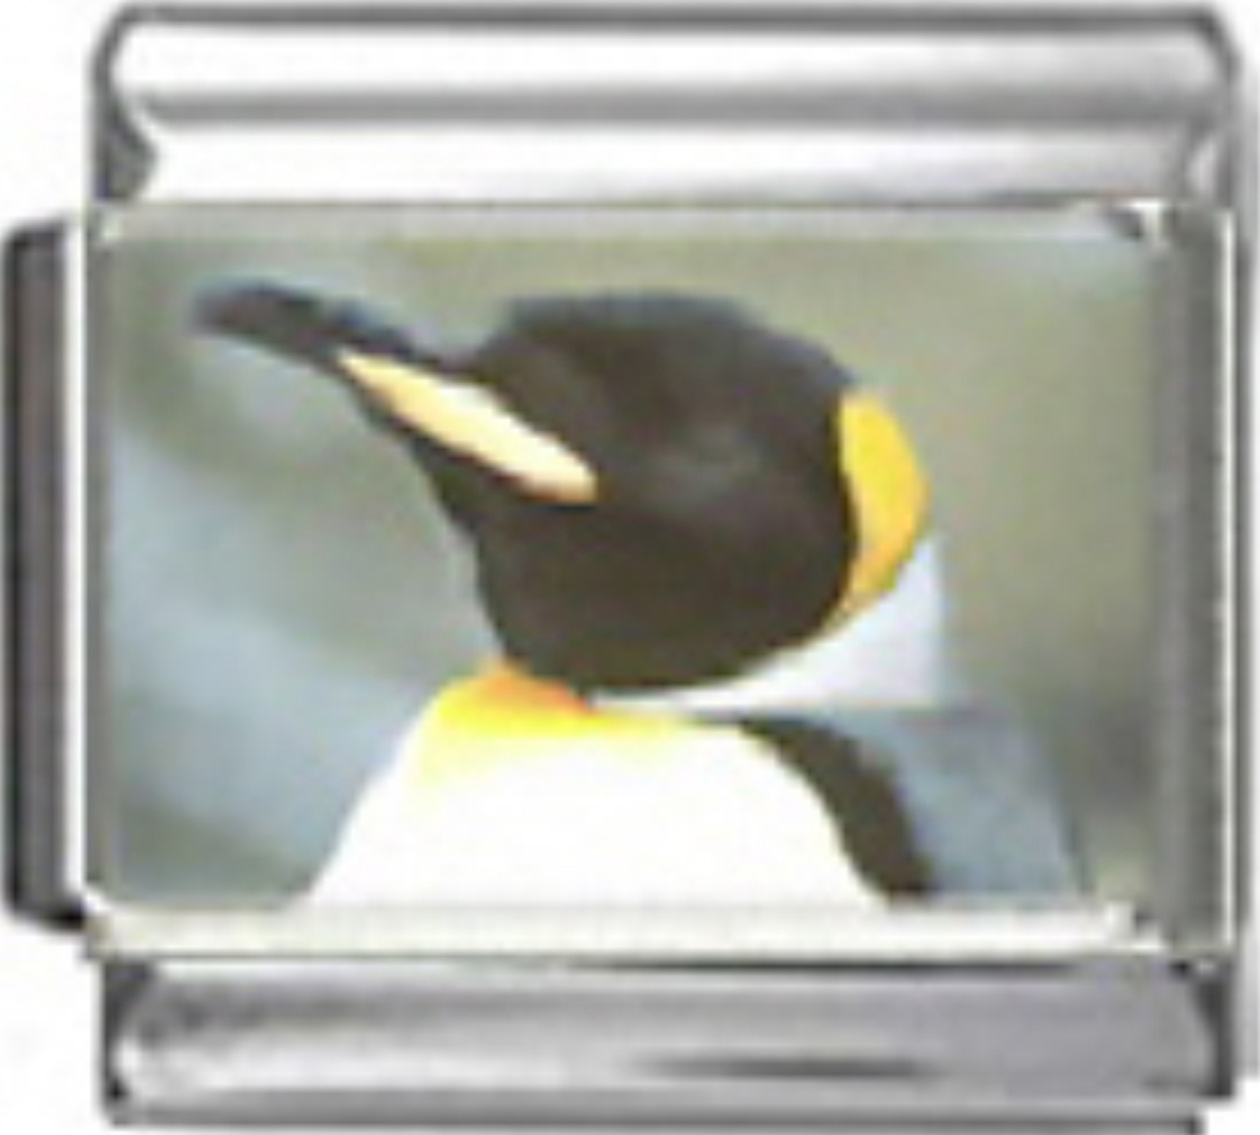 OC010-Penguin